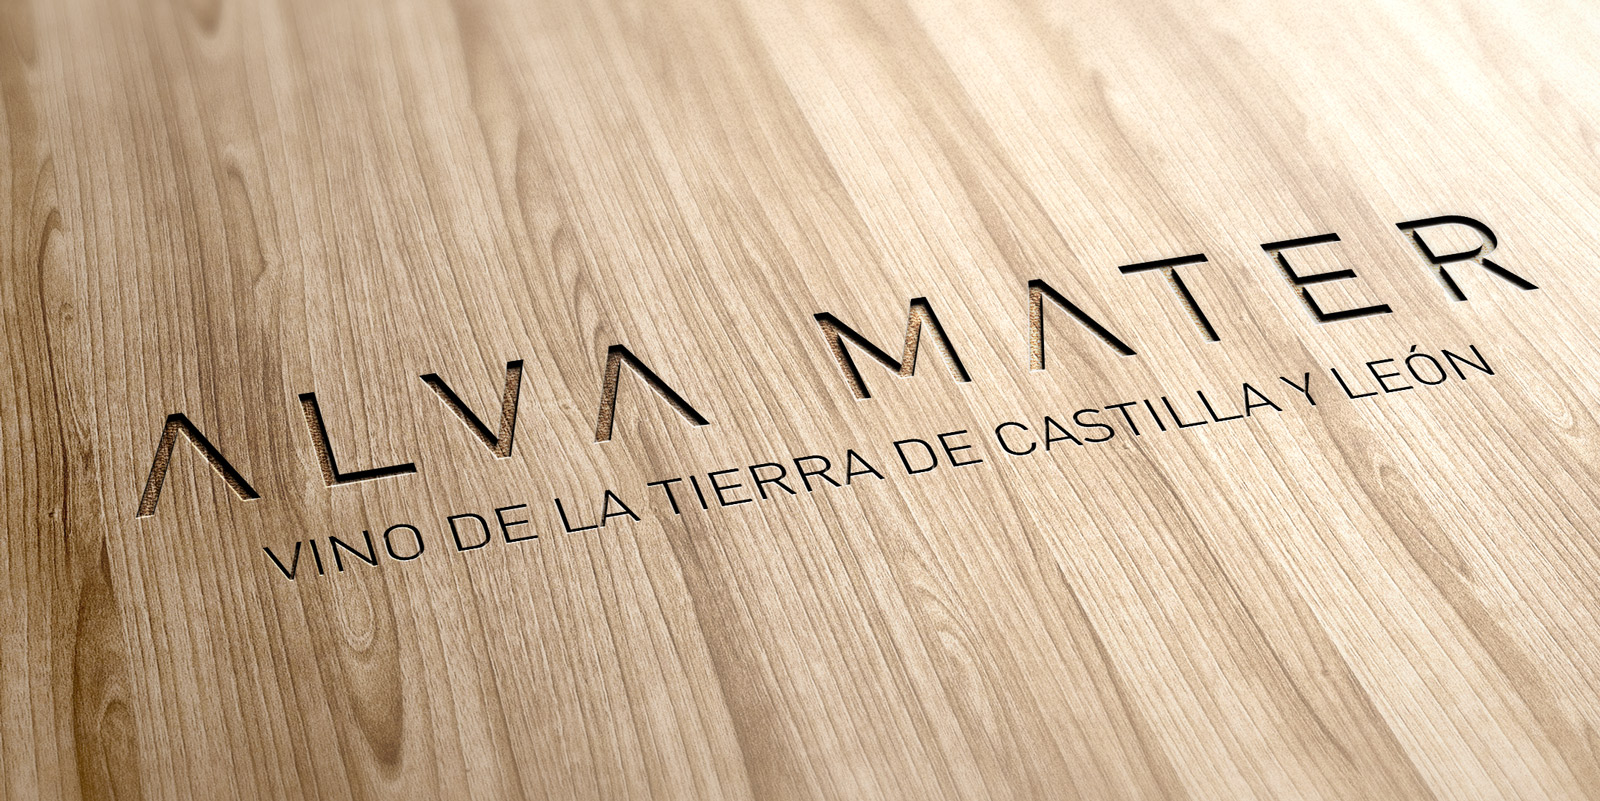 Diseño gráfico y creativo de etiquetas y packaging de vino para ALVA MATER